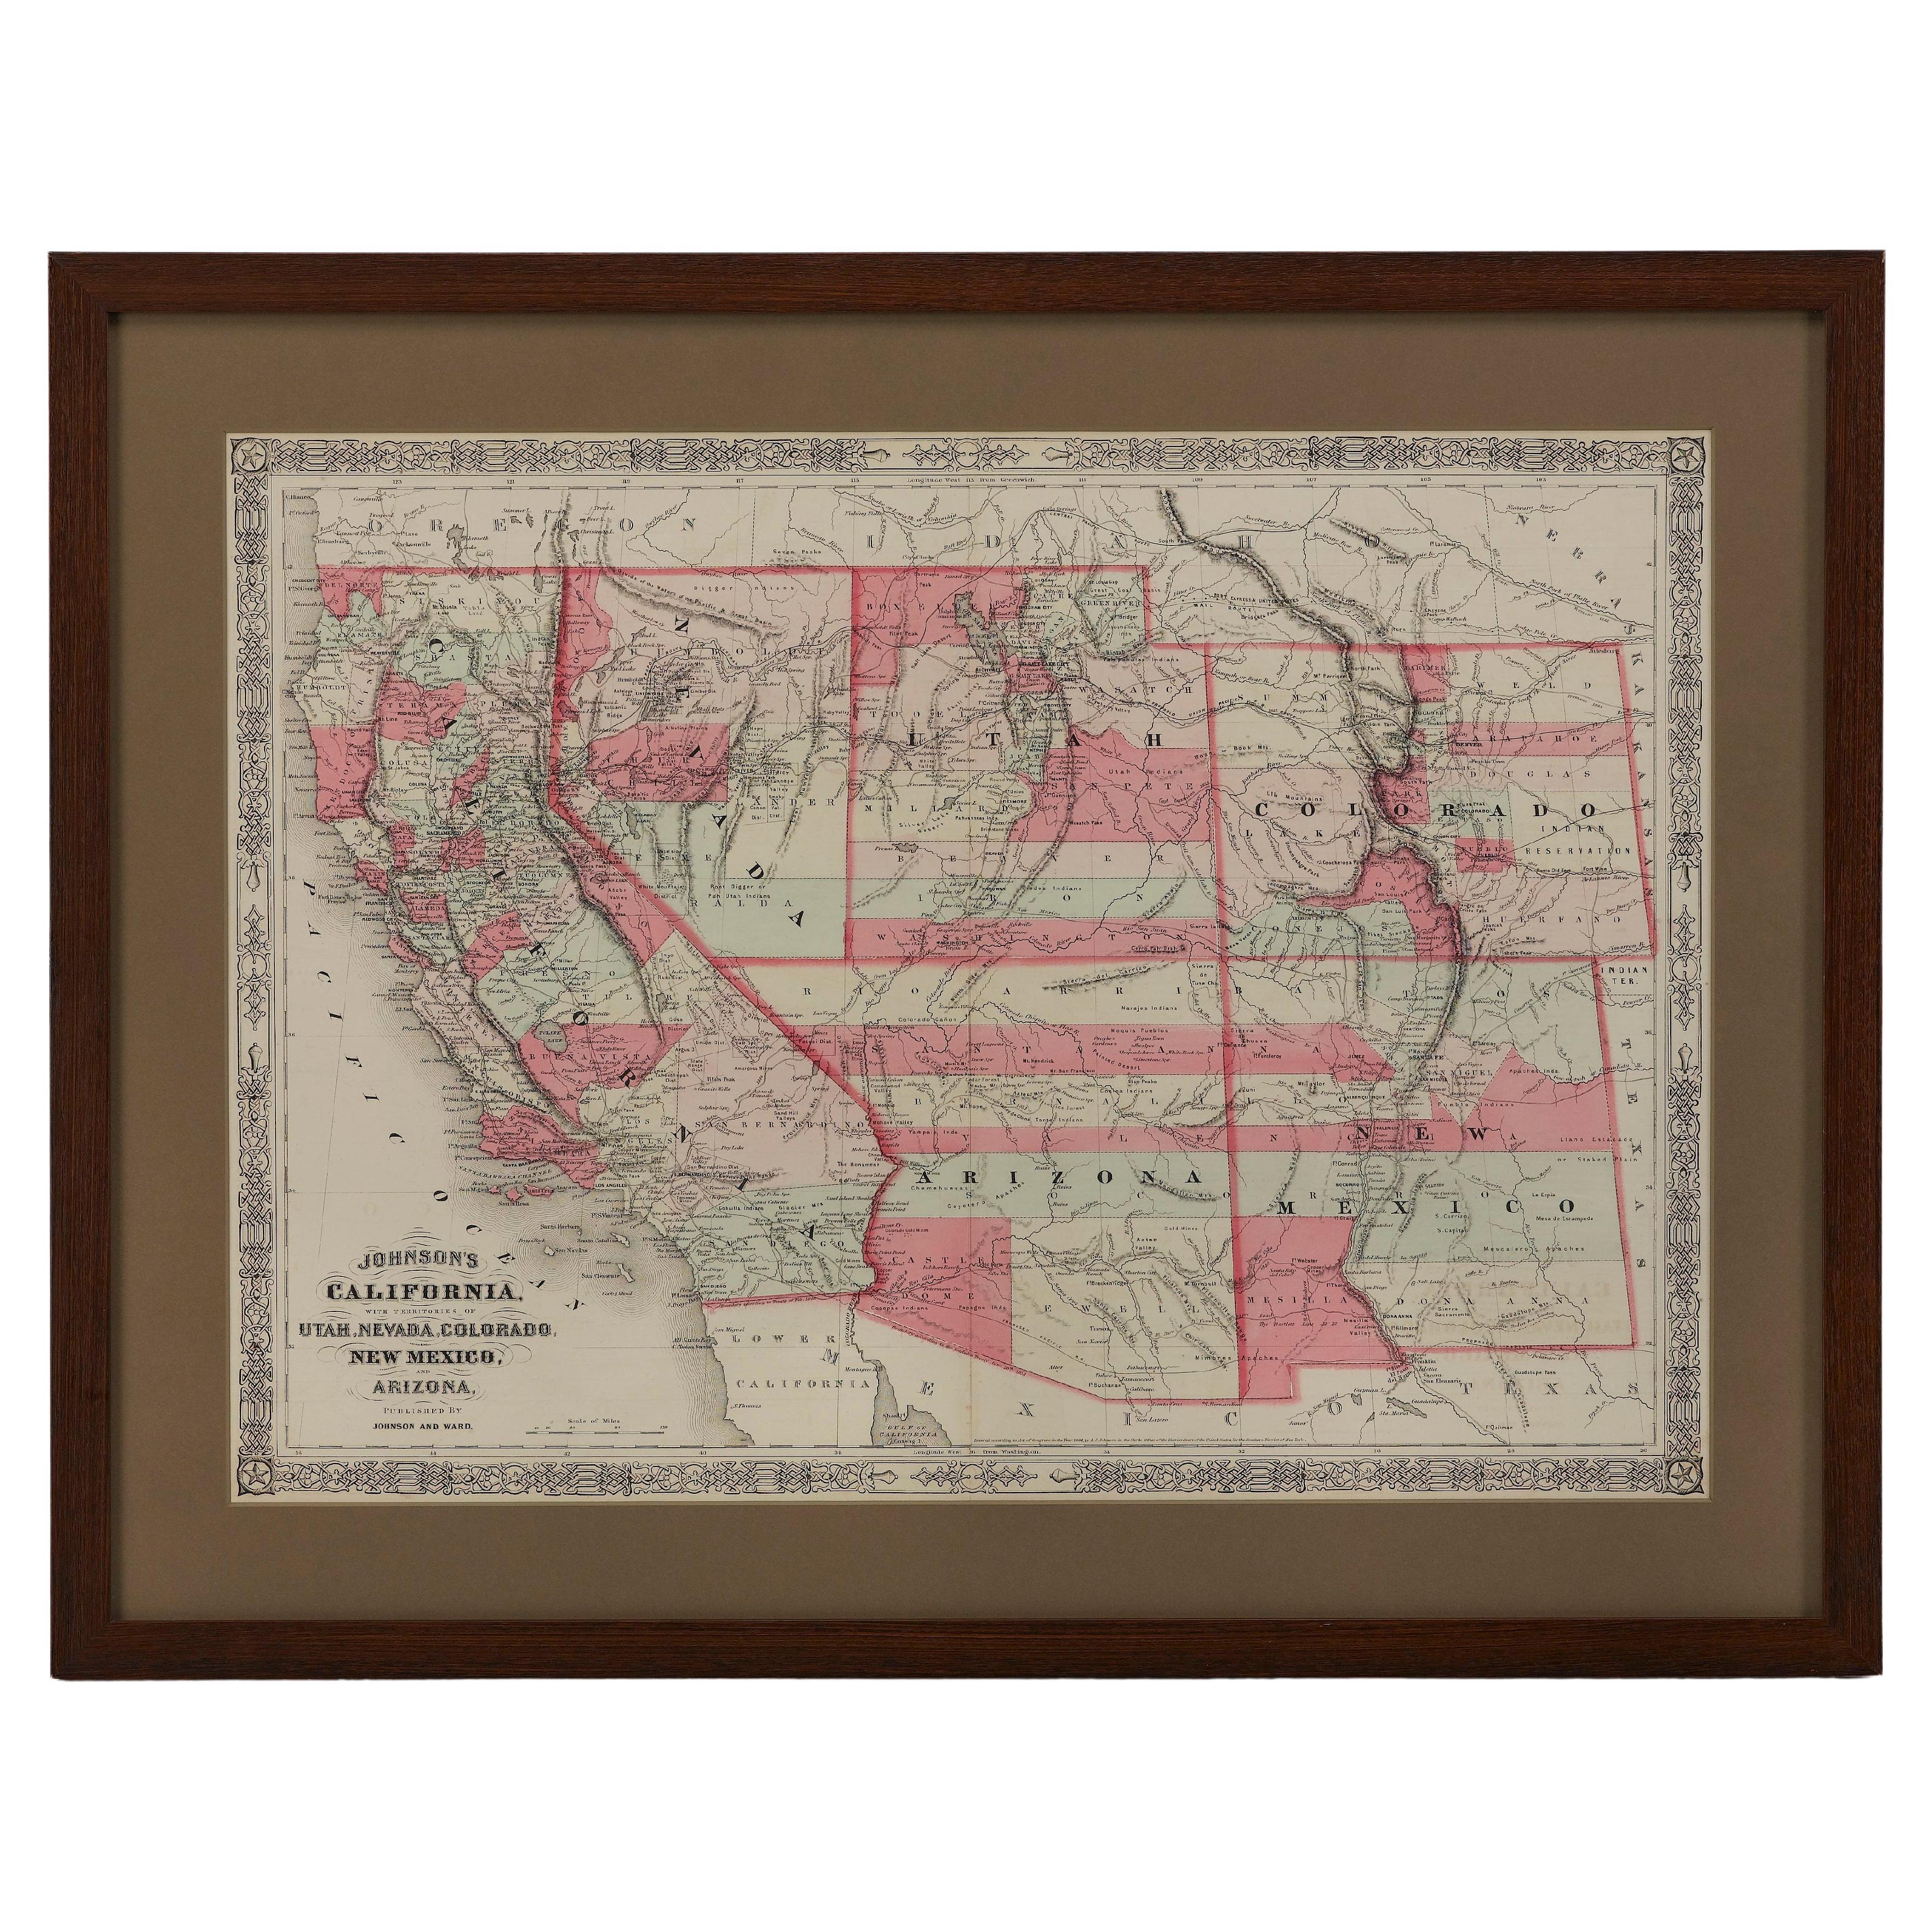 1865 Carte de la Californie, de l'Utah, du Nevada, du Colorado, du Nouveau-Mexique et de l'Arizona (Johnson's California, Utah, Nevada, Colorado, New Mexico, Arizona)